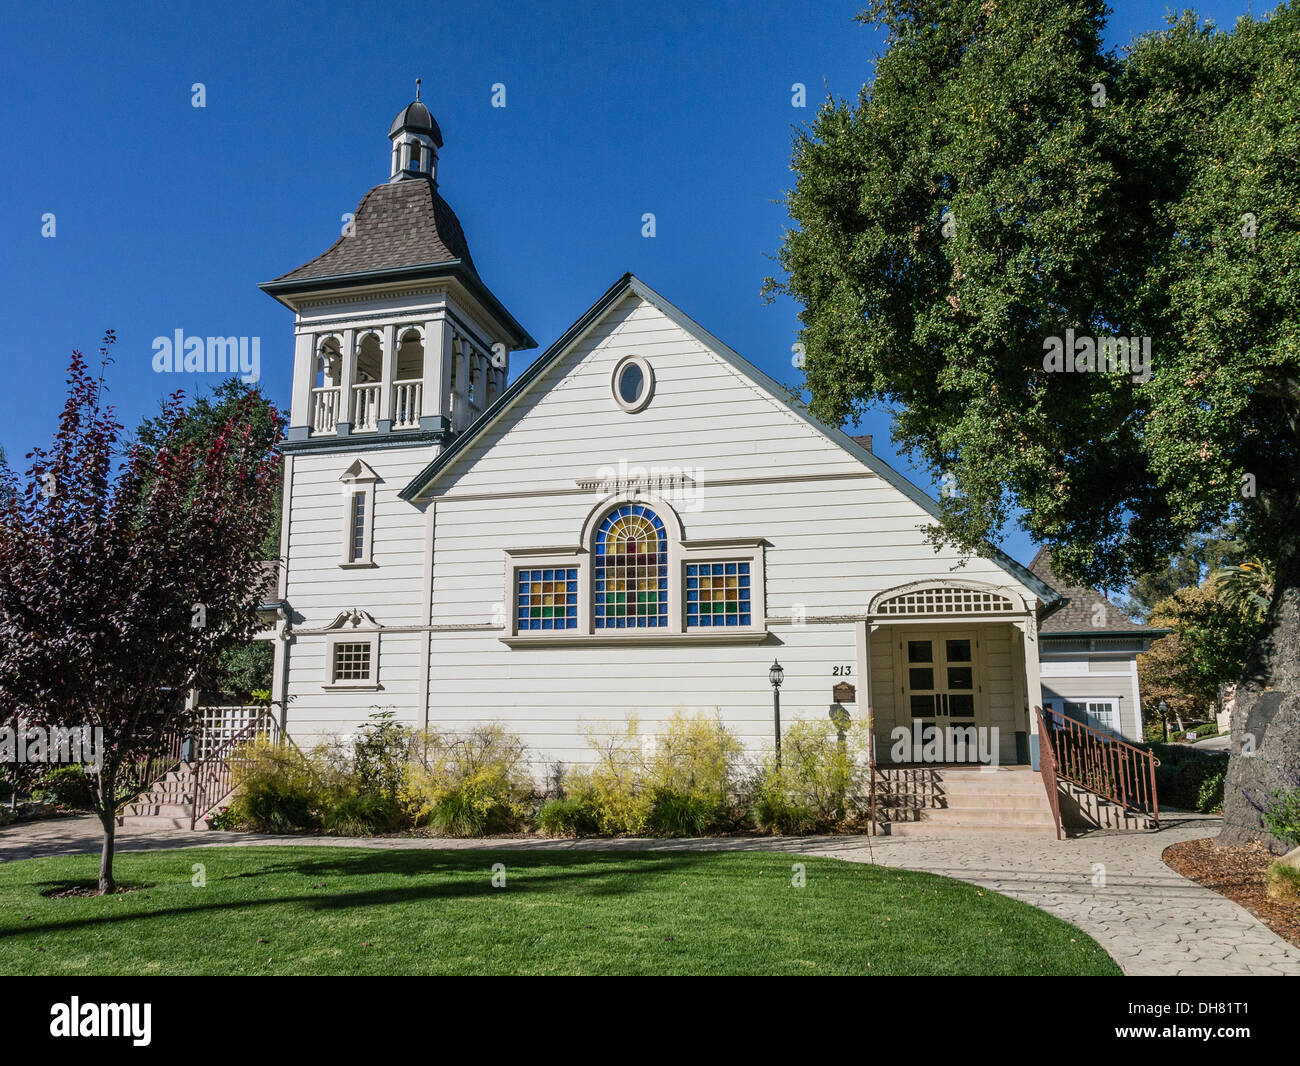 Détail de beffroi de la première église à Ojai, en Californie. Construit à l'origine par une congrégation presbytérienne. Banque D'Images